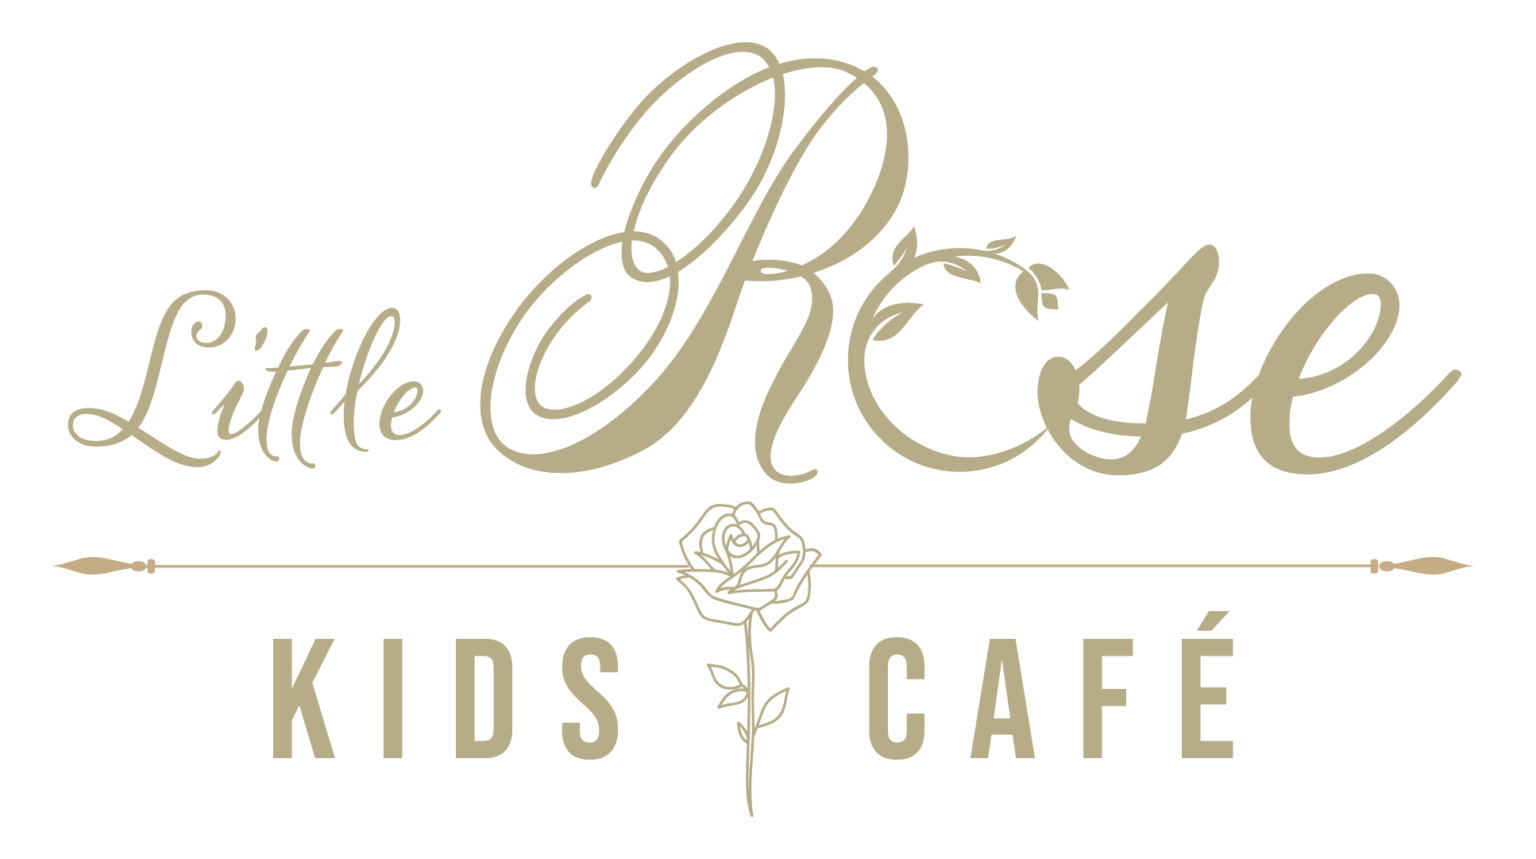 Little Rose Logo